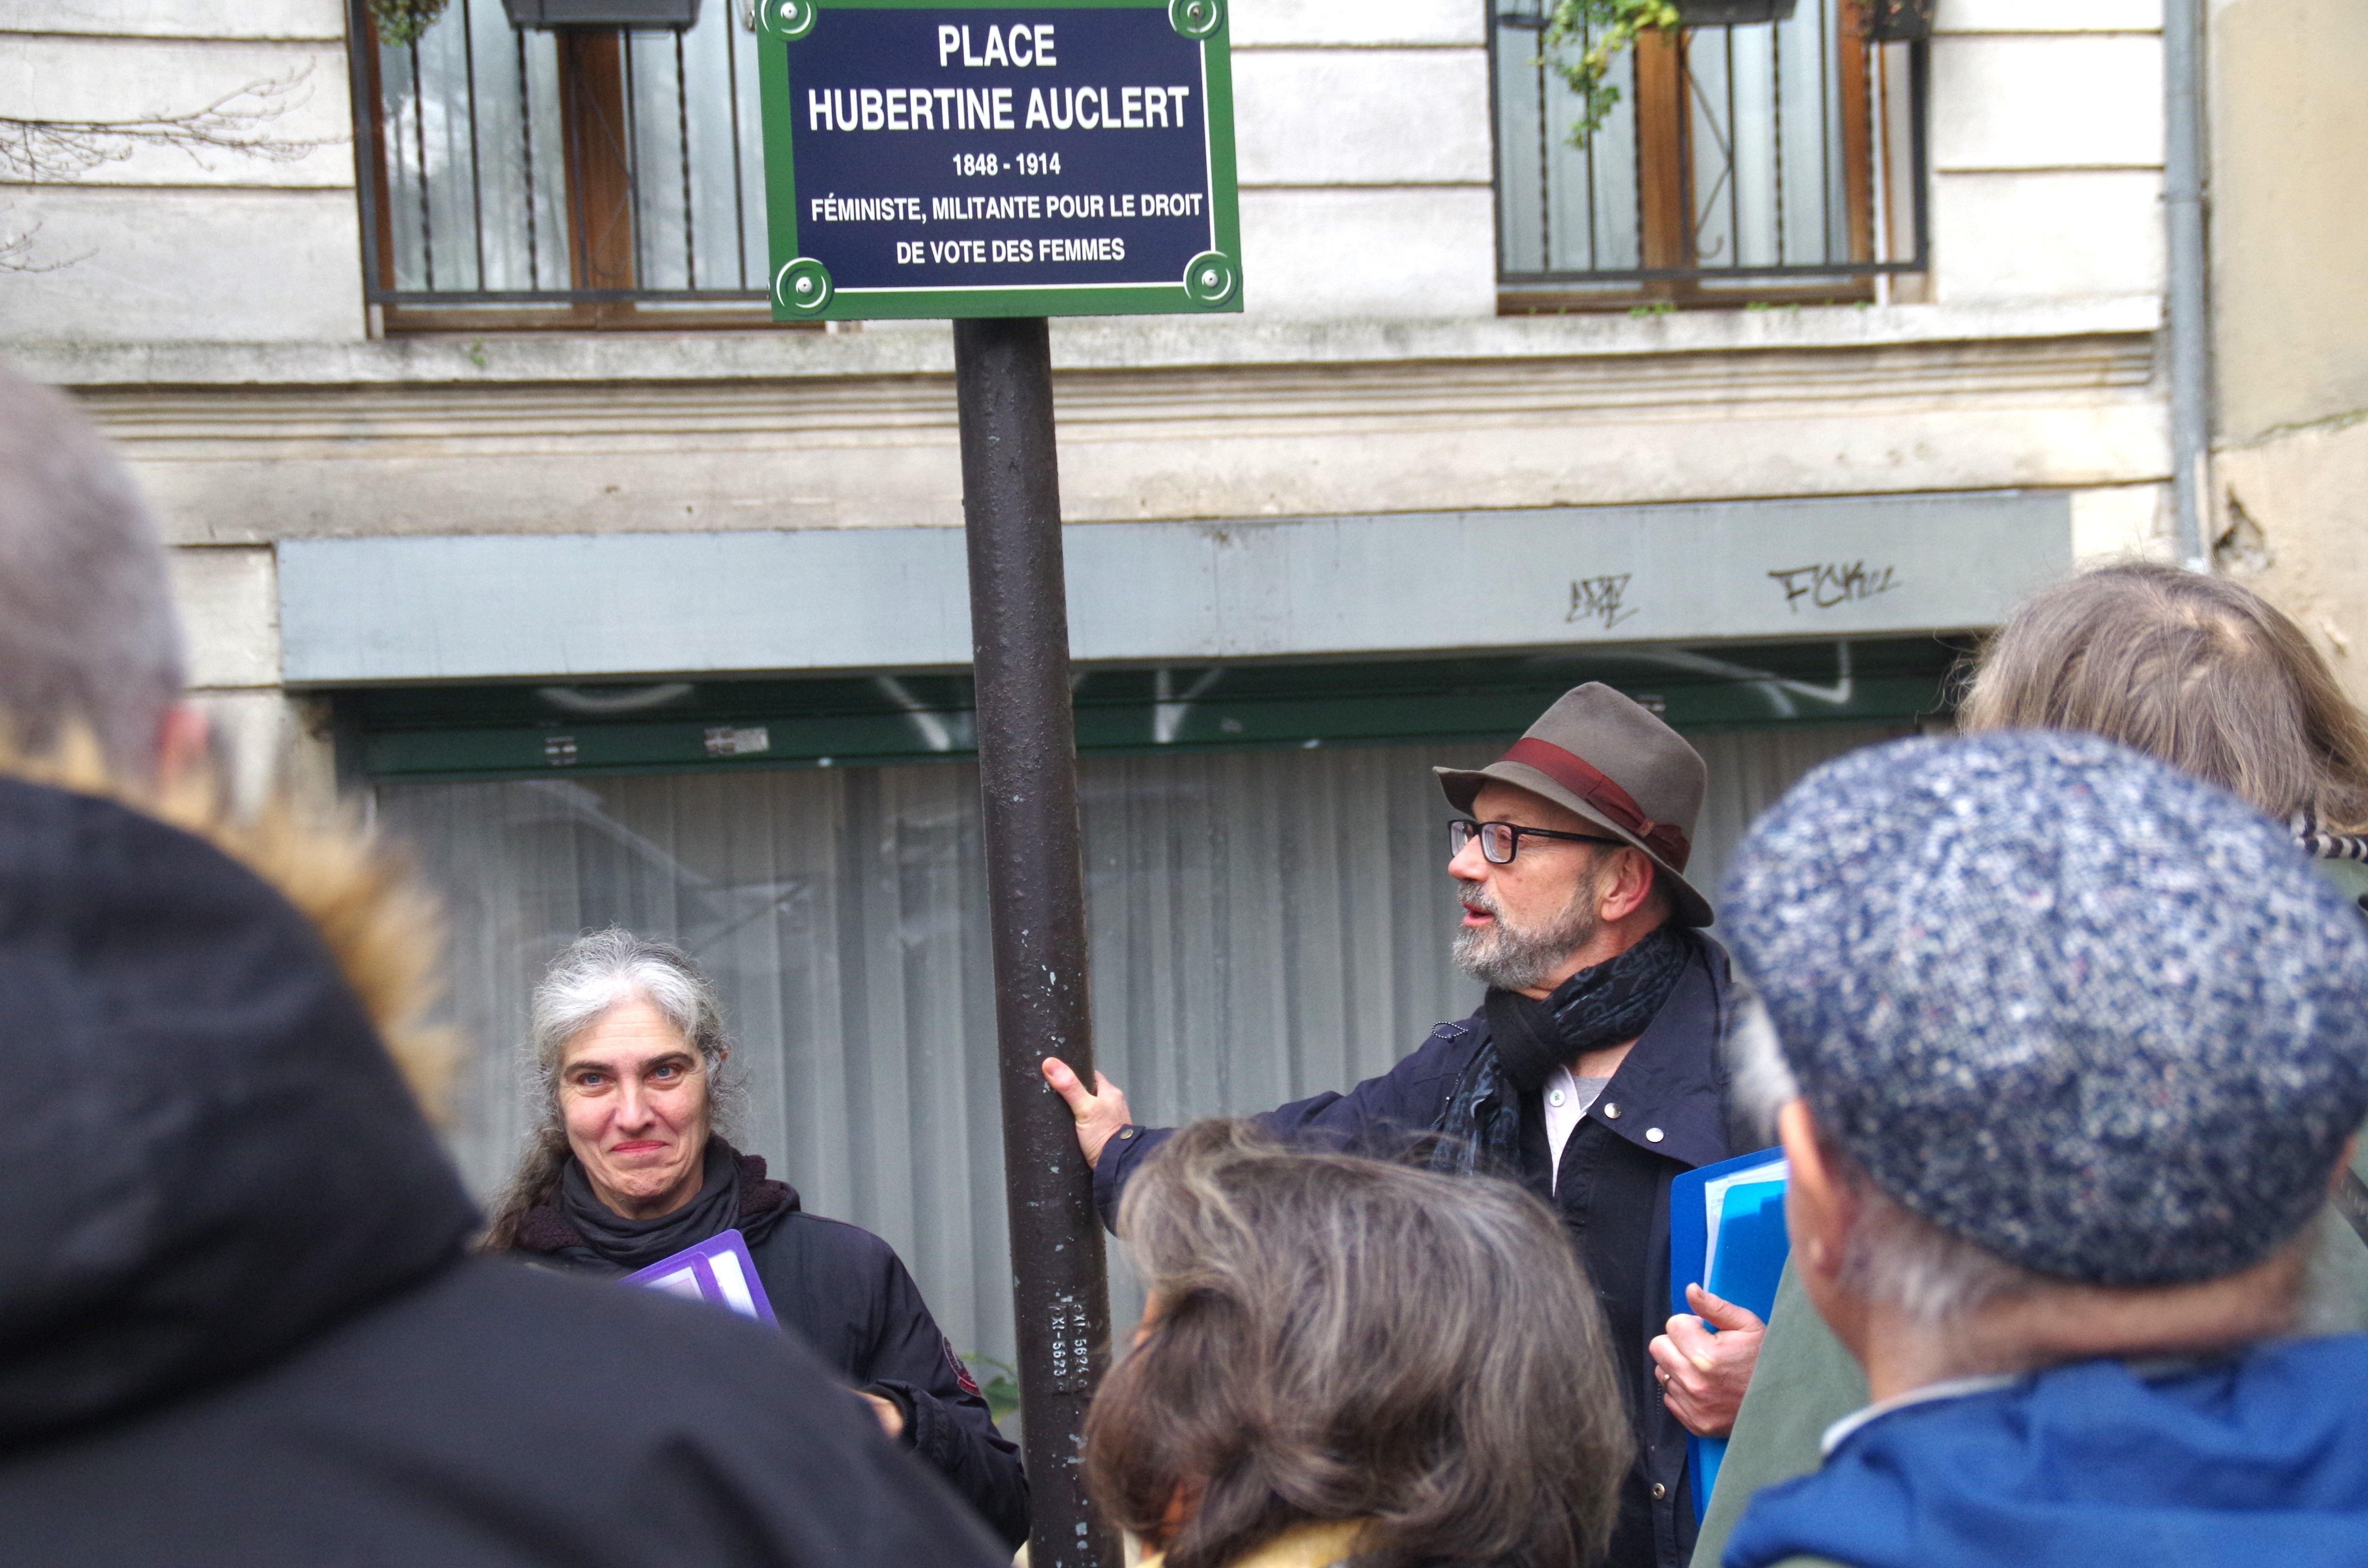 Paris (XIe), le mercredi 6 mars. Depuis 2013, une place rend hommage à Hubertine Auclert, écrivaine et militante féministe. Depuis, la féminisation de l'espace public se développe. LP/A.B.